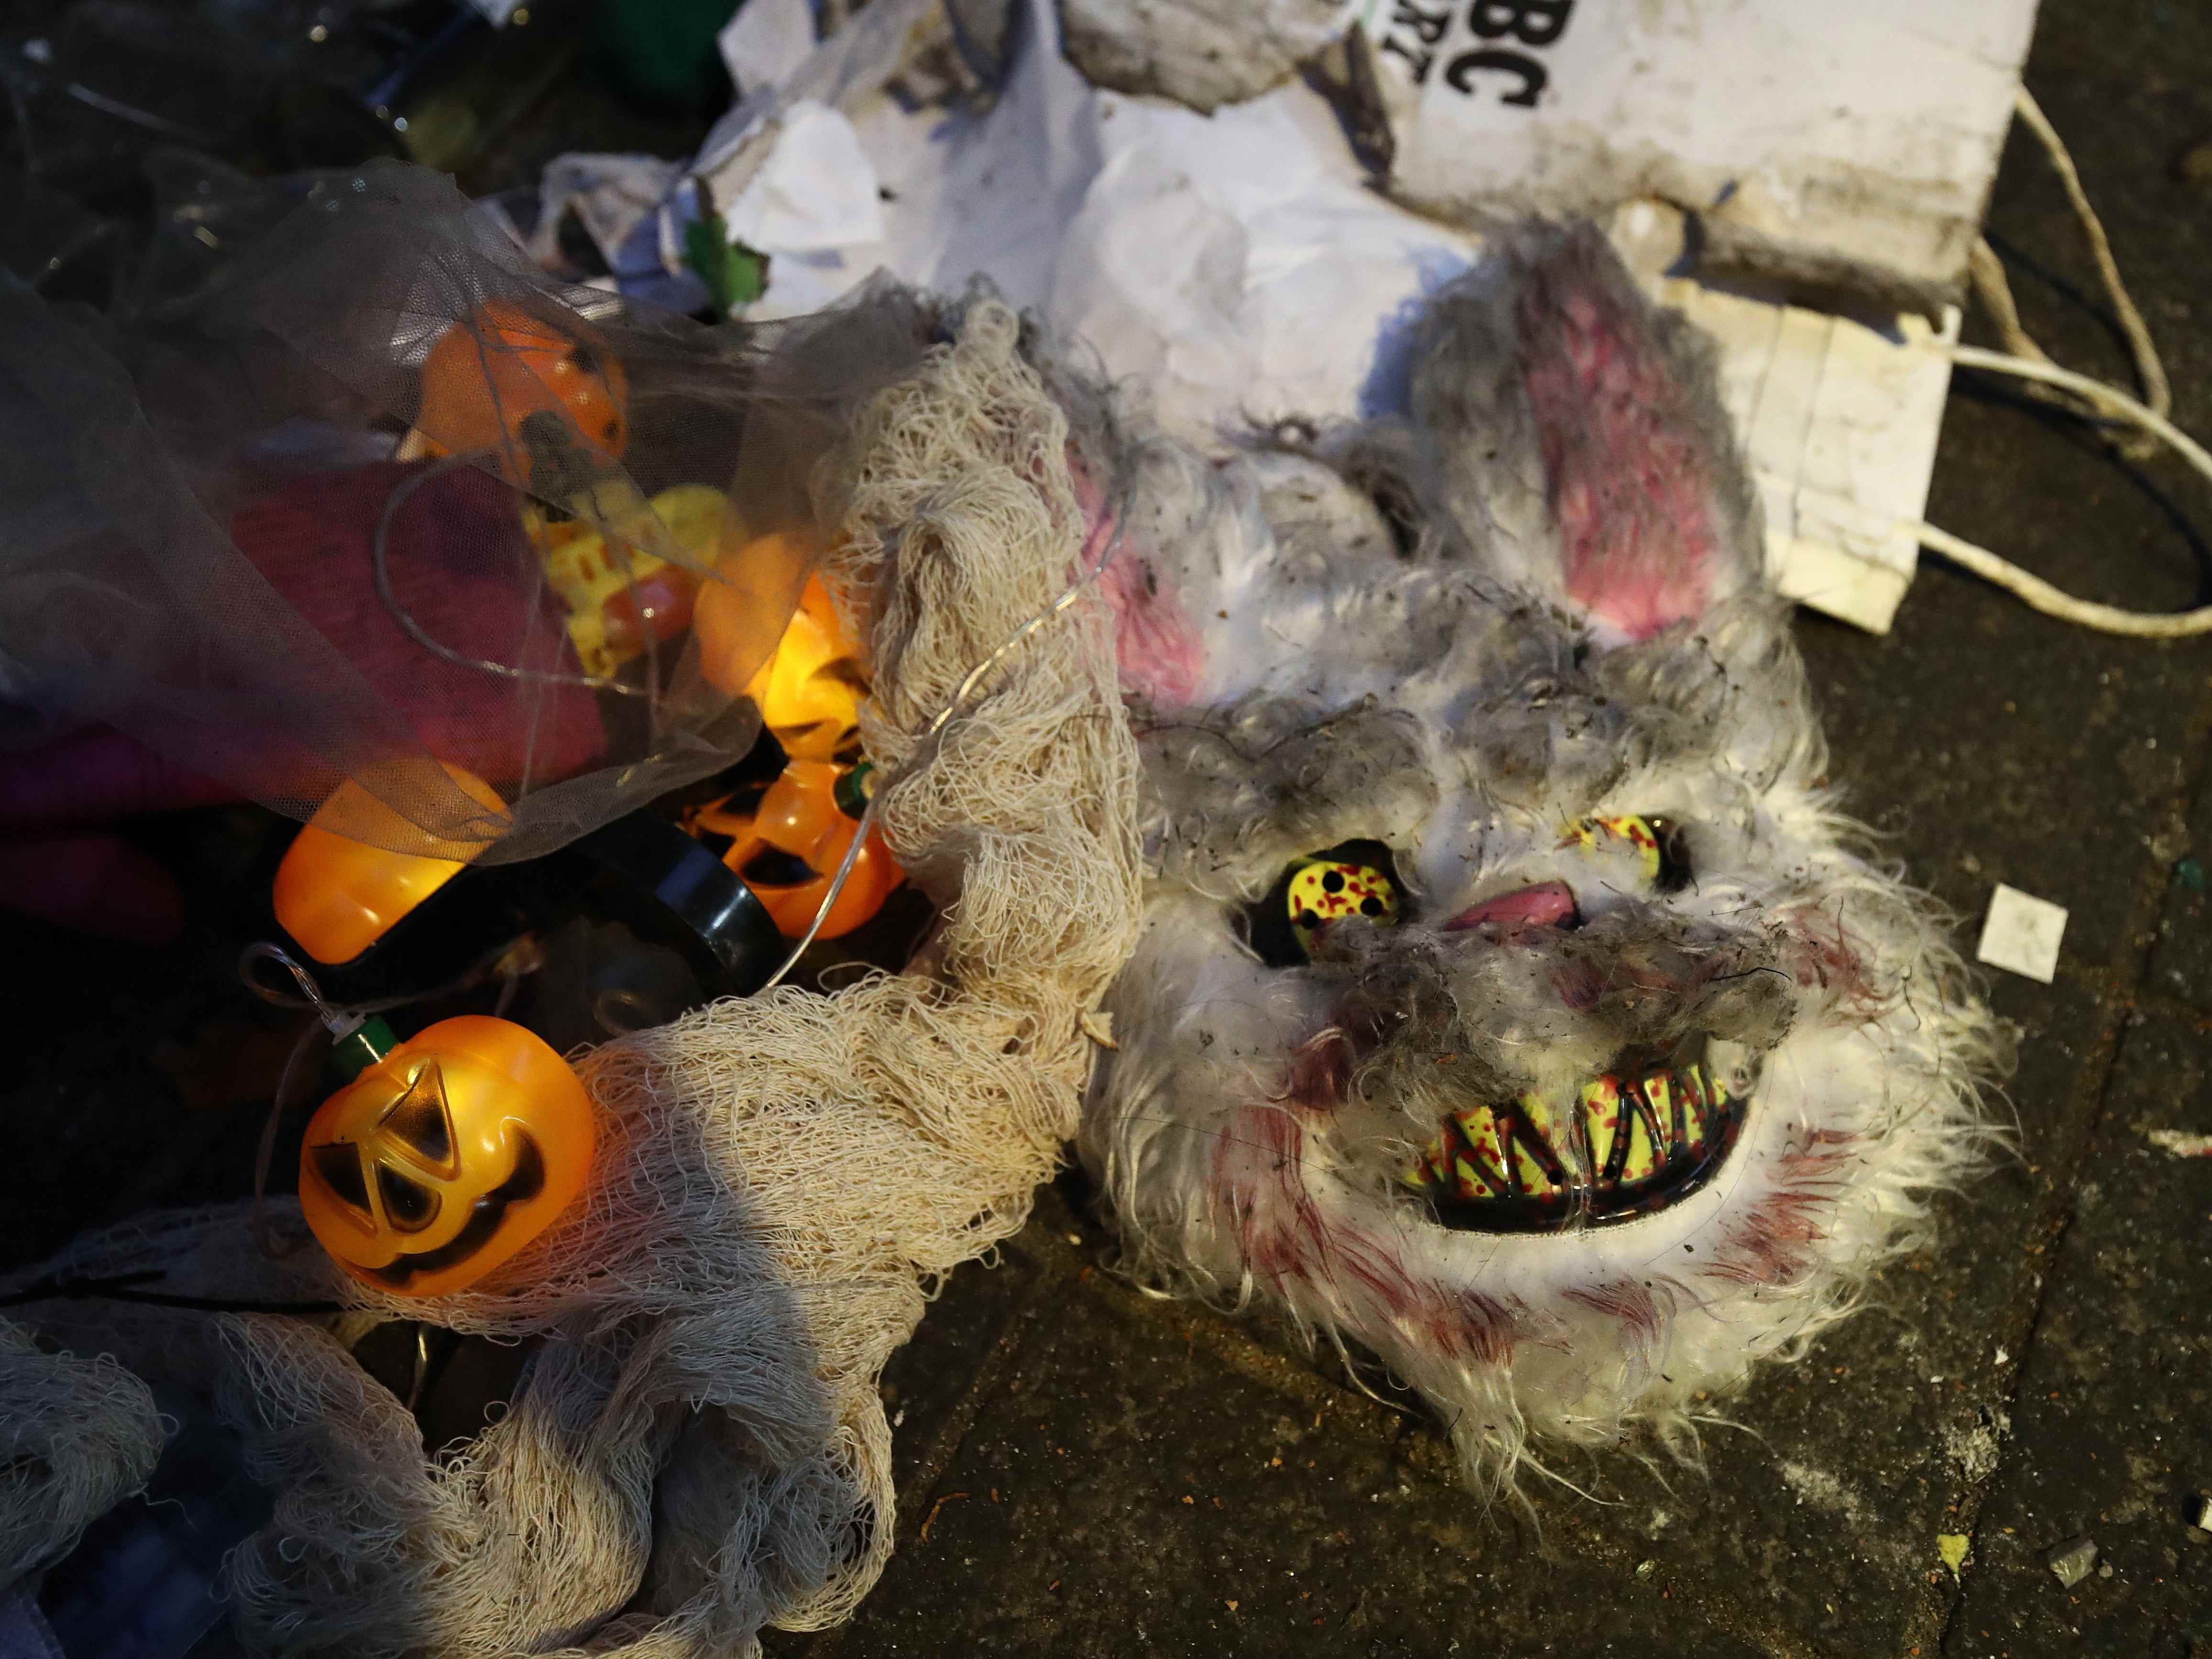 Die Habseligkeiten der Opfer werden am Schauplatz eines tödlichen Ansturms während eines Halloween-Festivals am 30. Oktober 2022 in Seoul, Südkorea, gesehen.